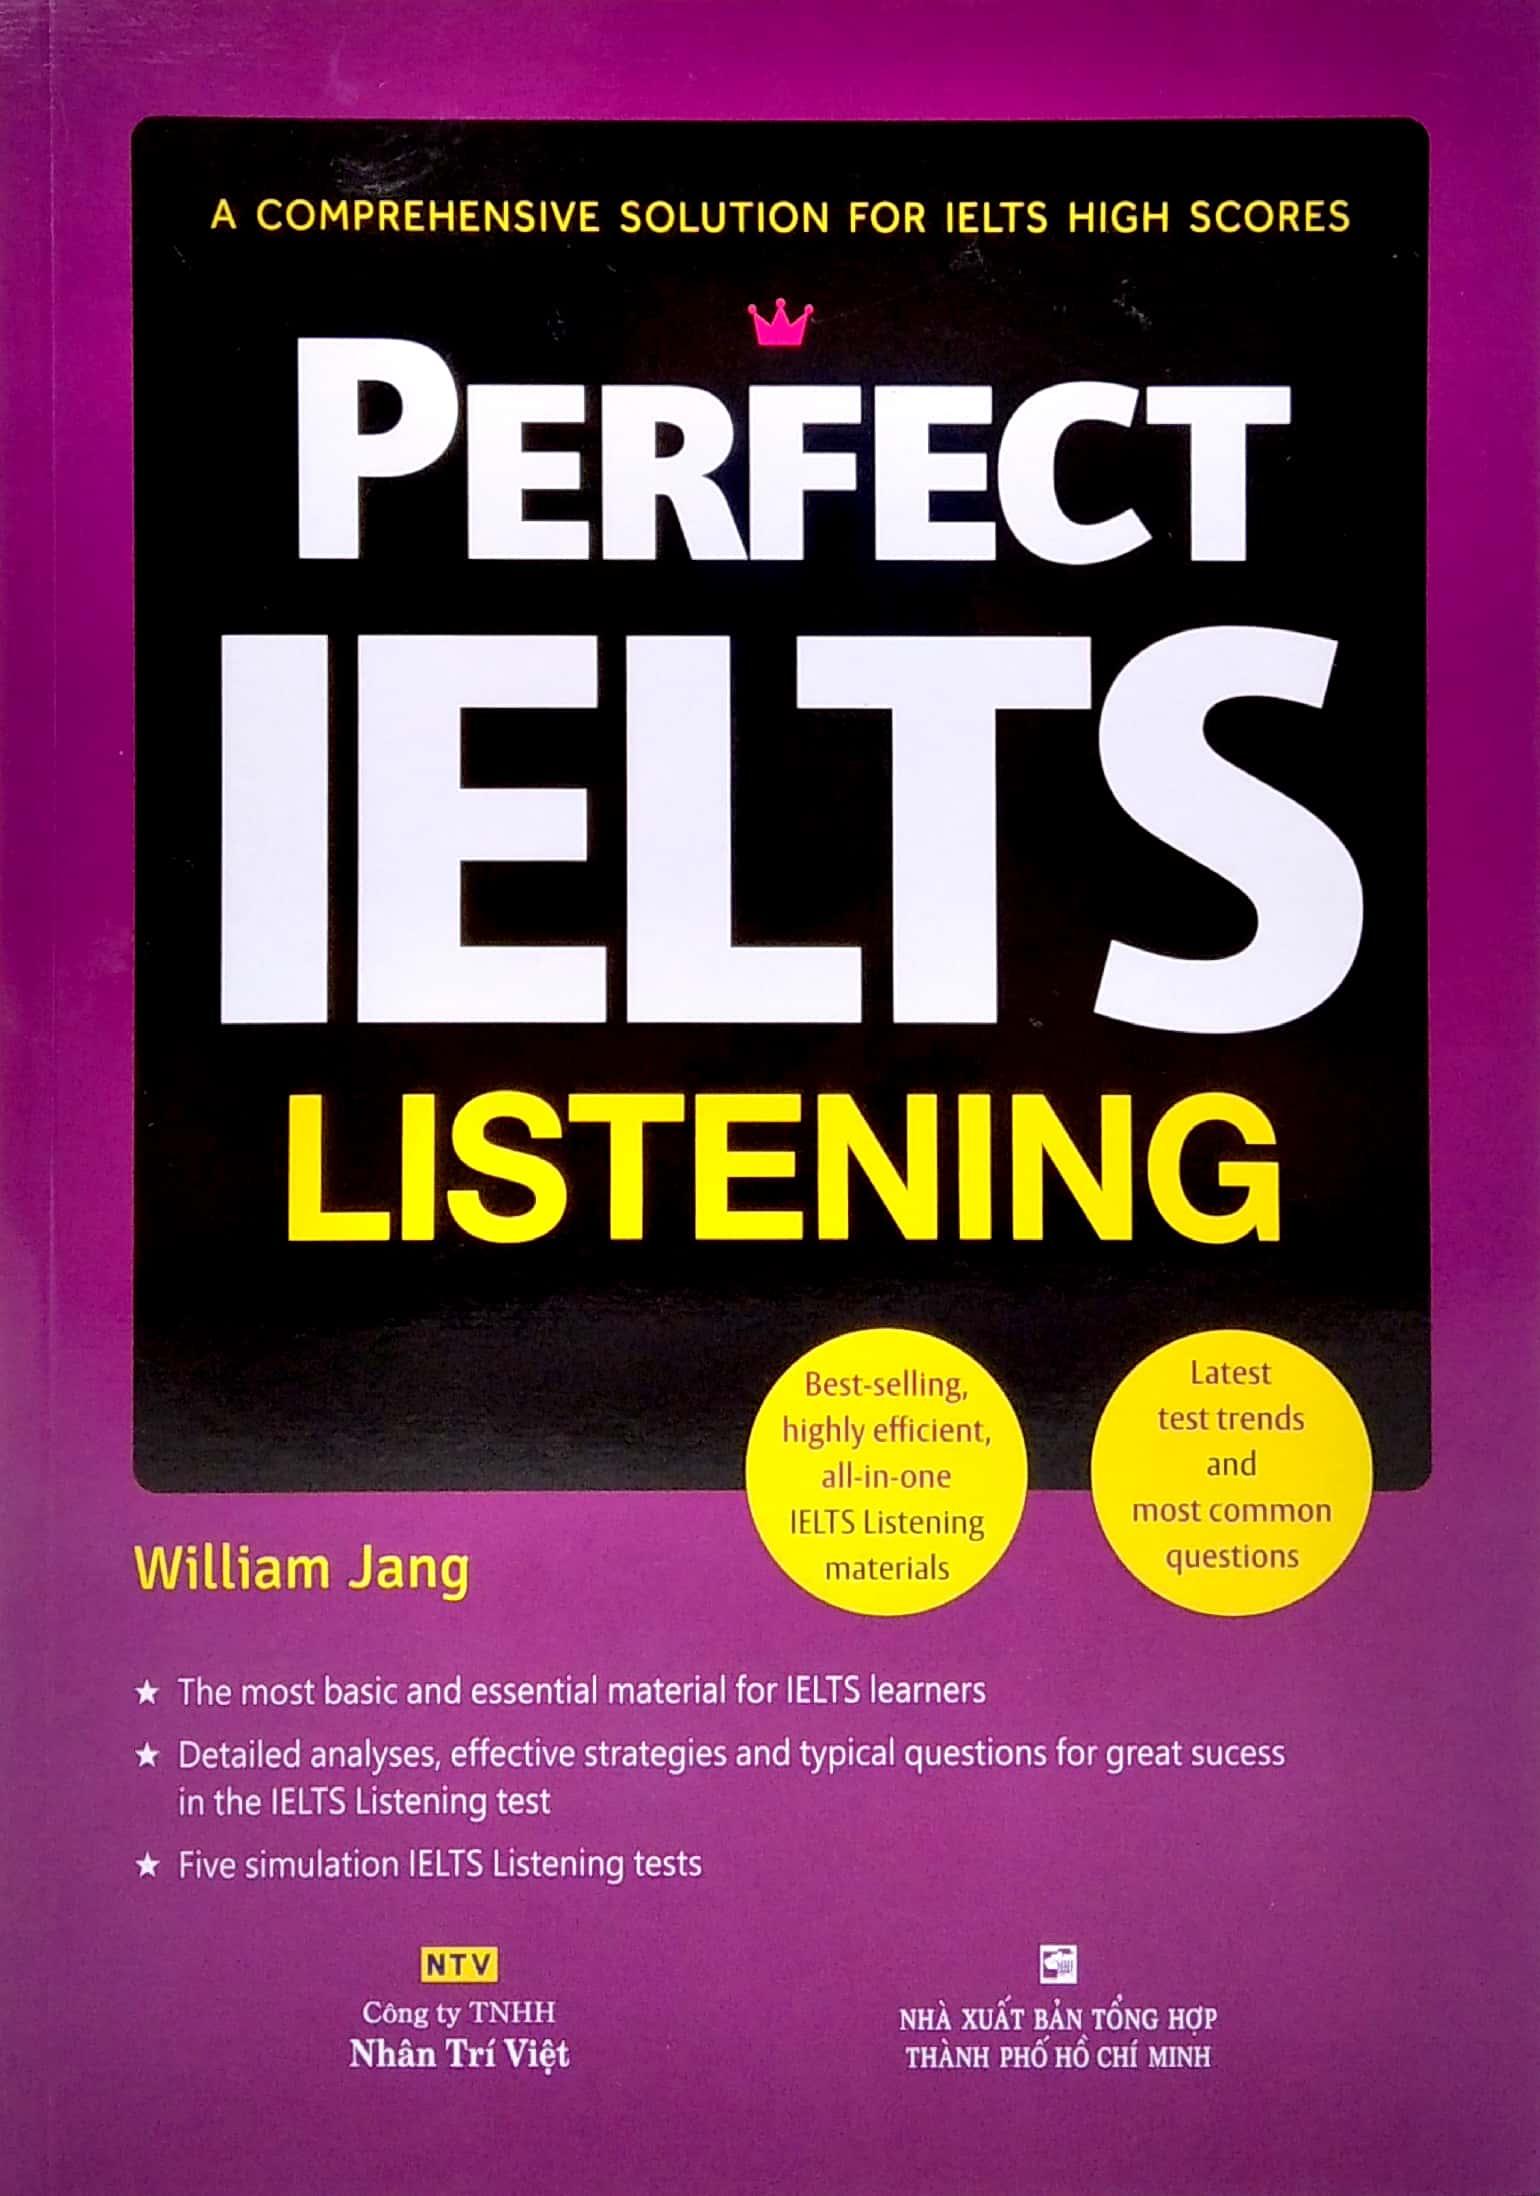 Perfect IELTS Listening